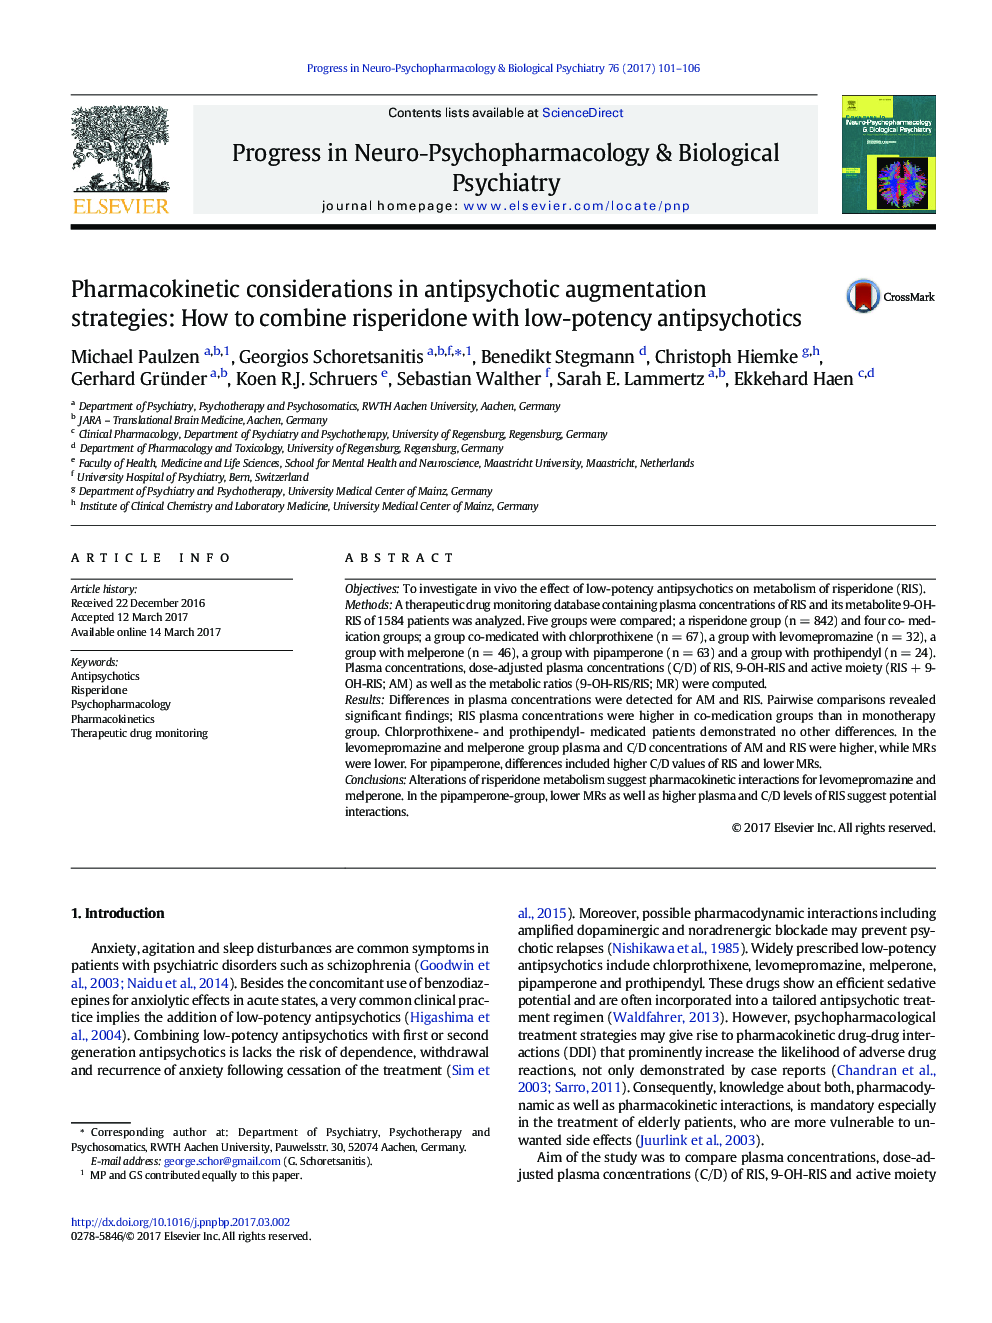 ملاحظات فارماکوکینتیک در استراتژی های تقویت آنتی سایکوتیک: چگونگی ترکیب ریزپریدون با آنتیسایکوتیک کم توان 